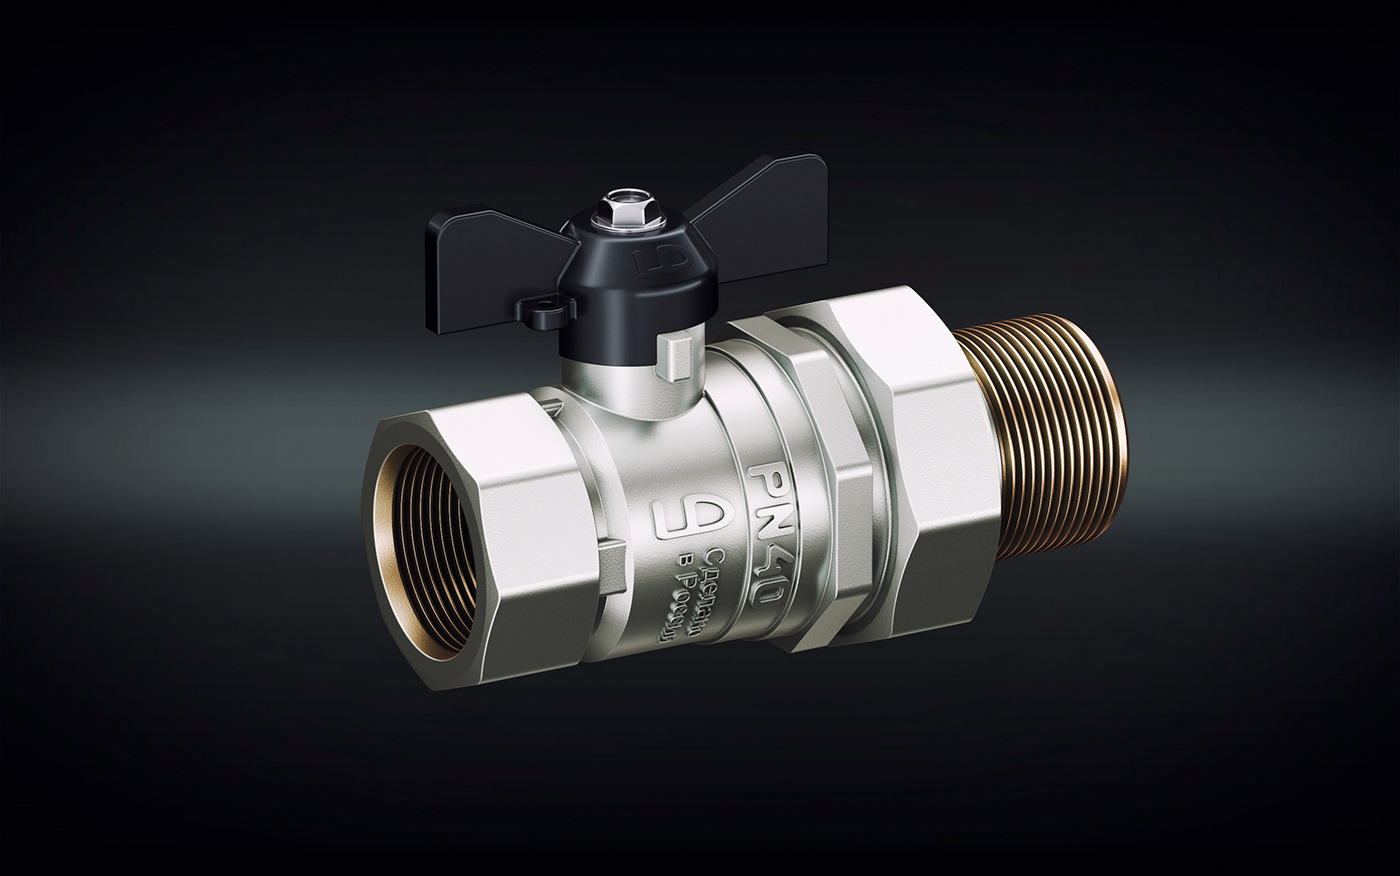 ball valve  Valve 3D 3d max corona render  Dmitry Gusev radiator battery Render brass